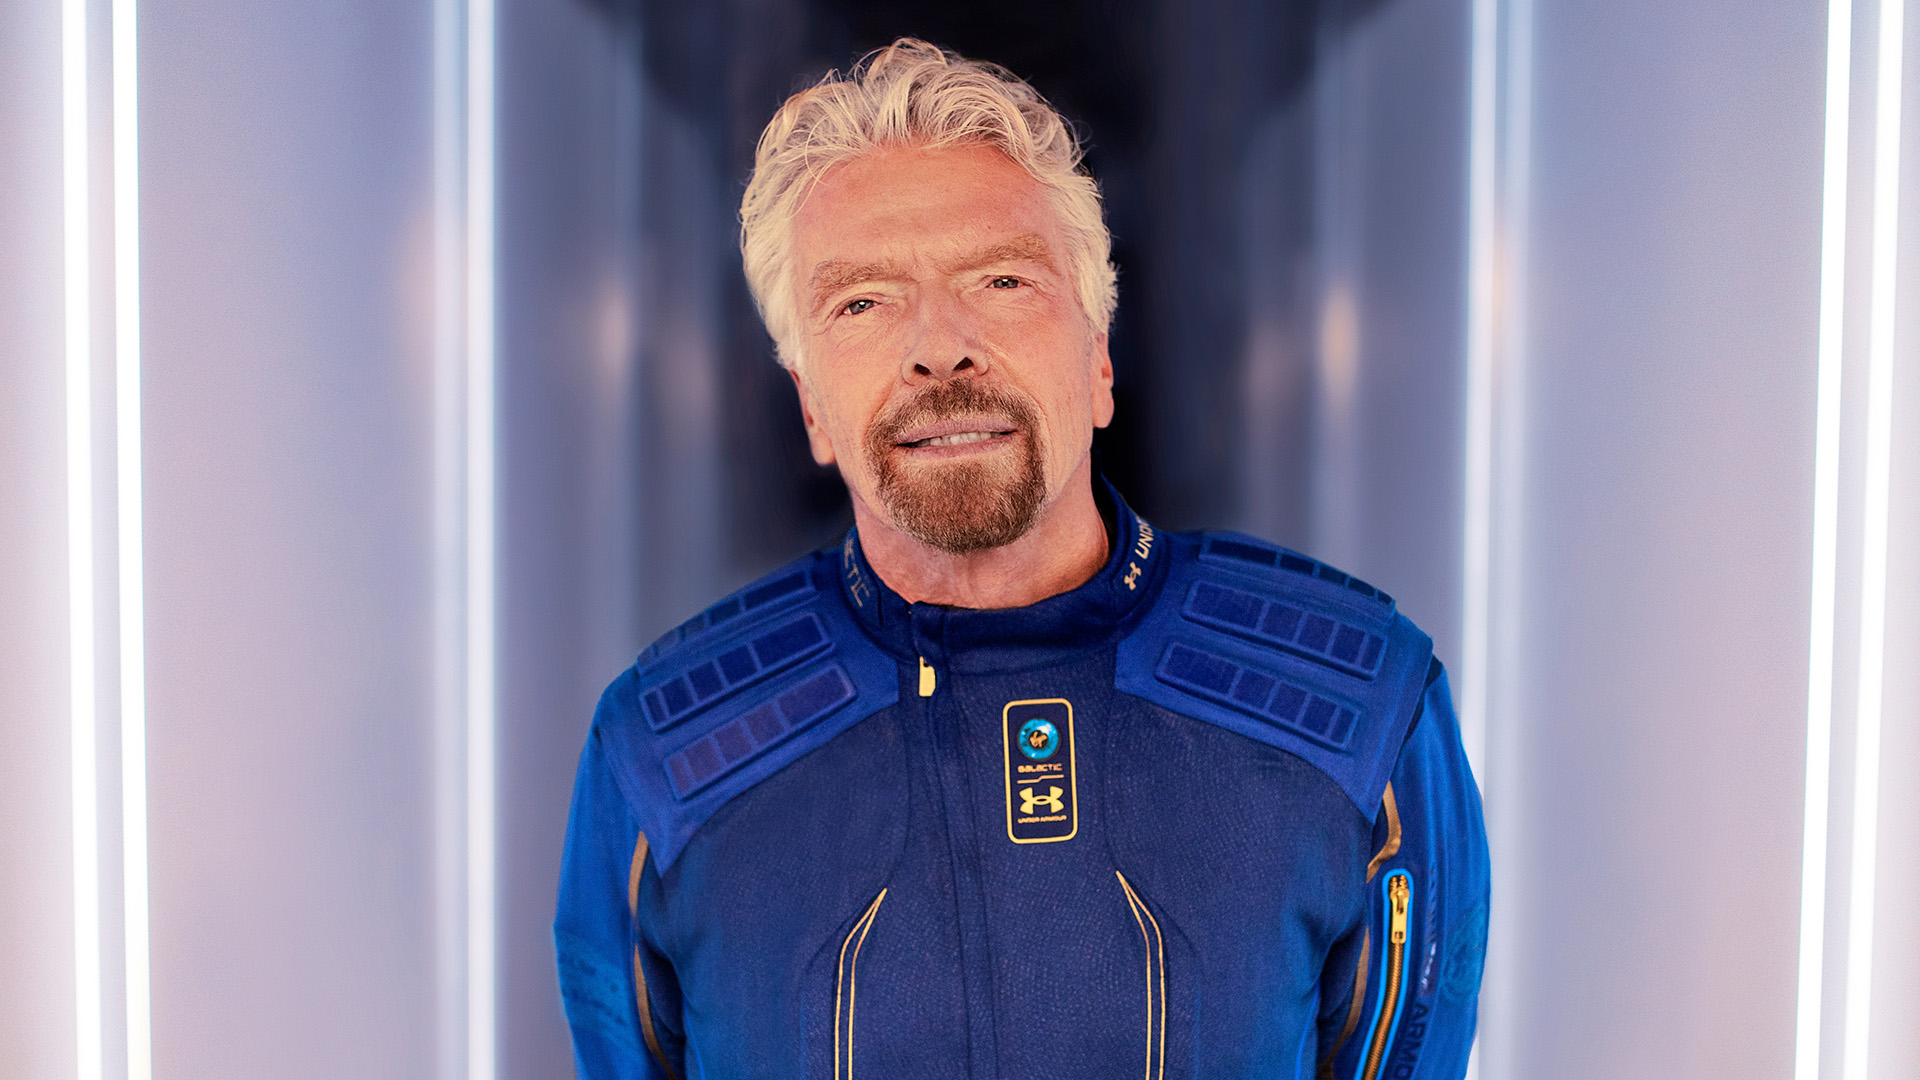 Milliardär Richard Branson posiert in Uniform im Vorfel des geplanten Raumflugs | EPA